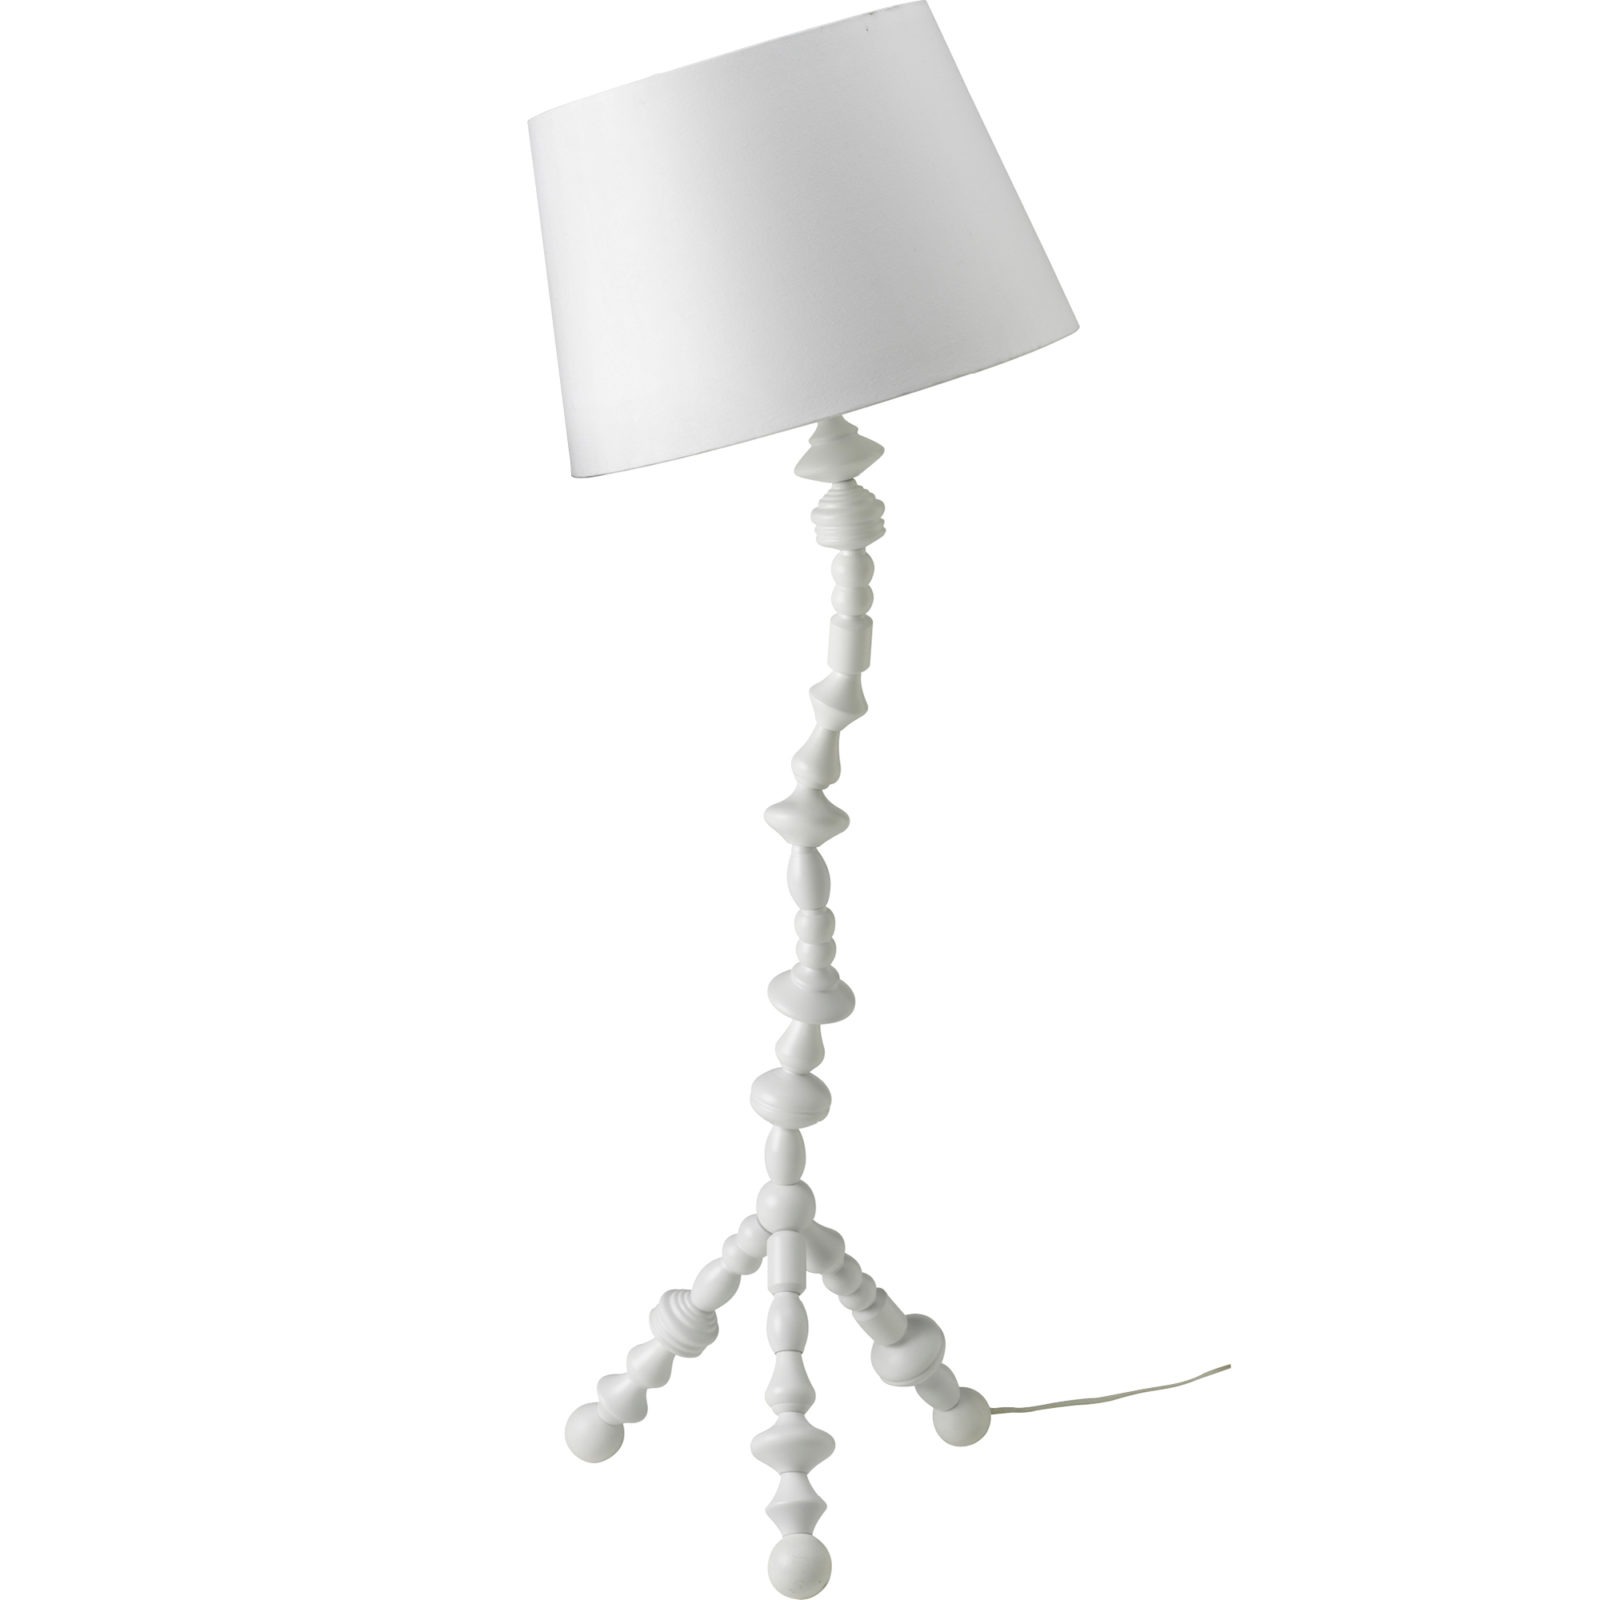 Vriden golvlampa av svarvade trästolpar med vit lampskärm, IKEA PS SVARVA.